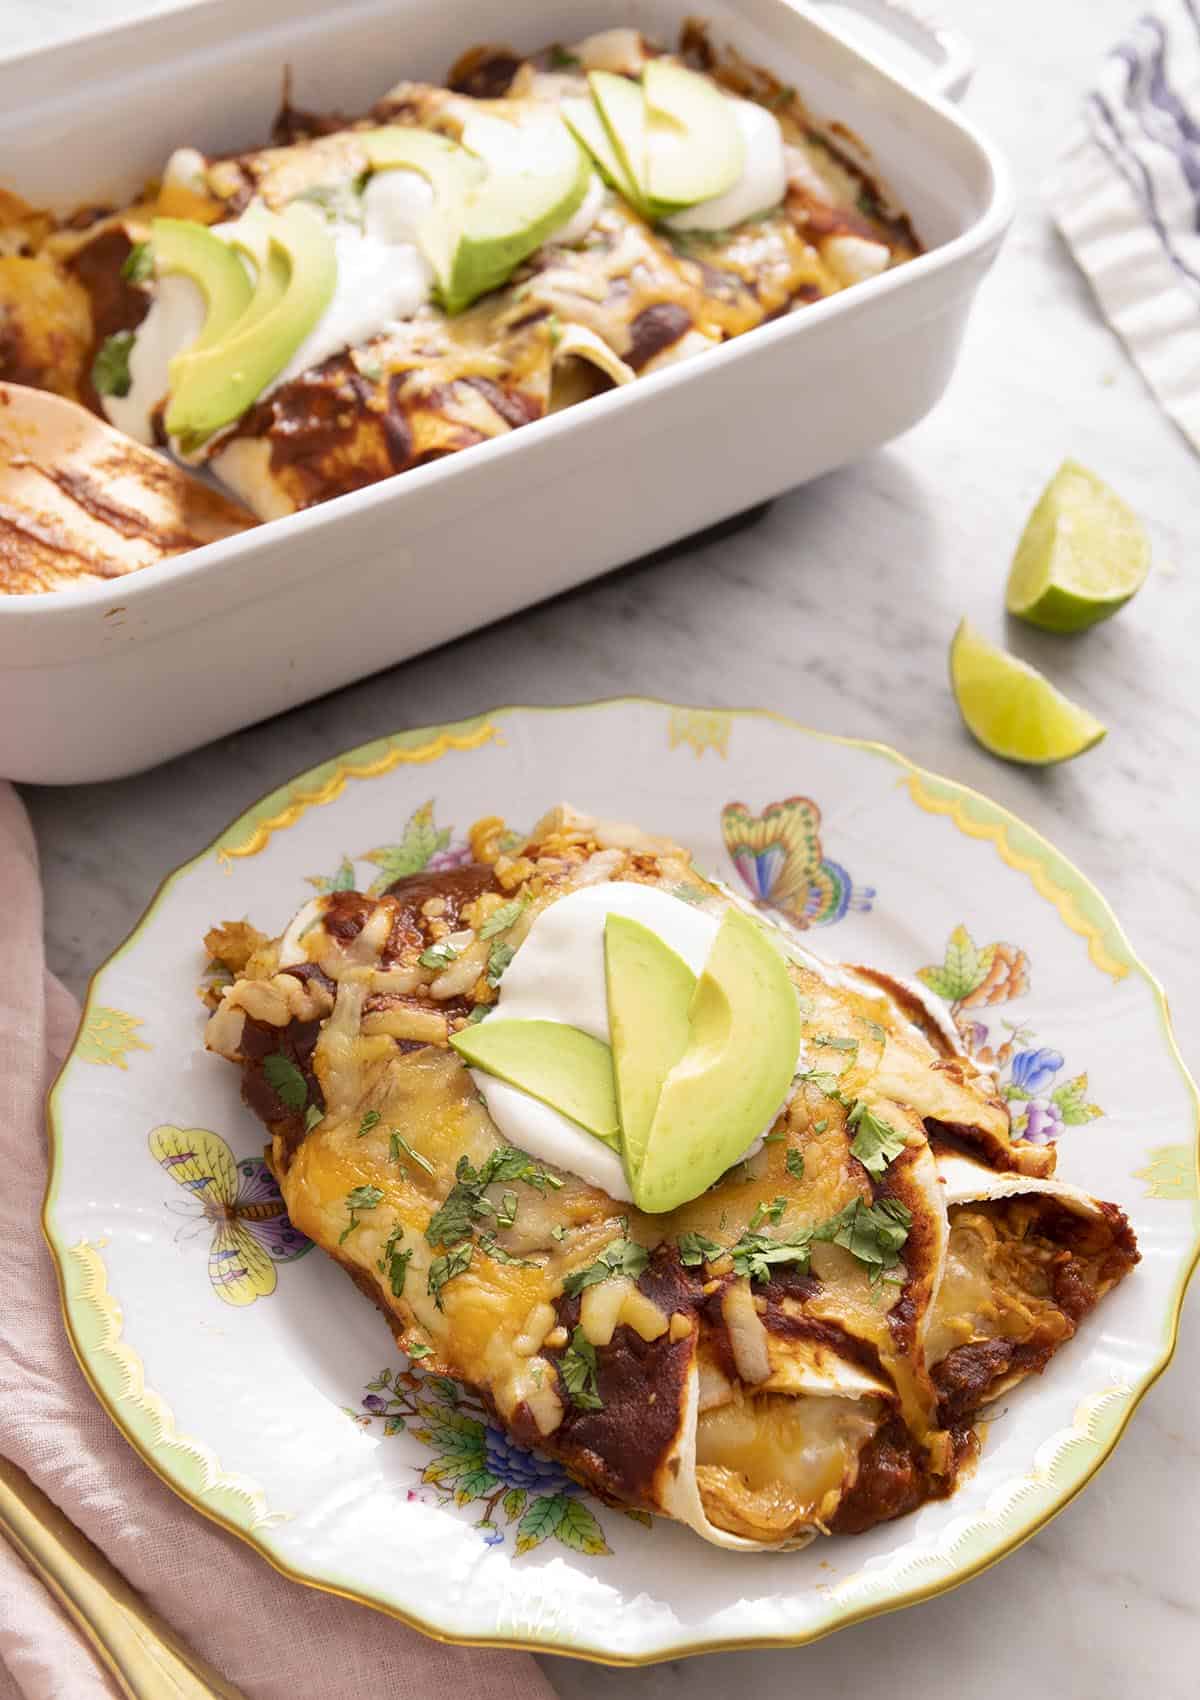 Chicken enchiladas on a plate